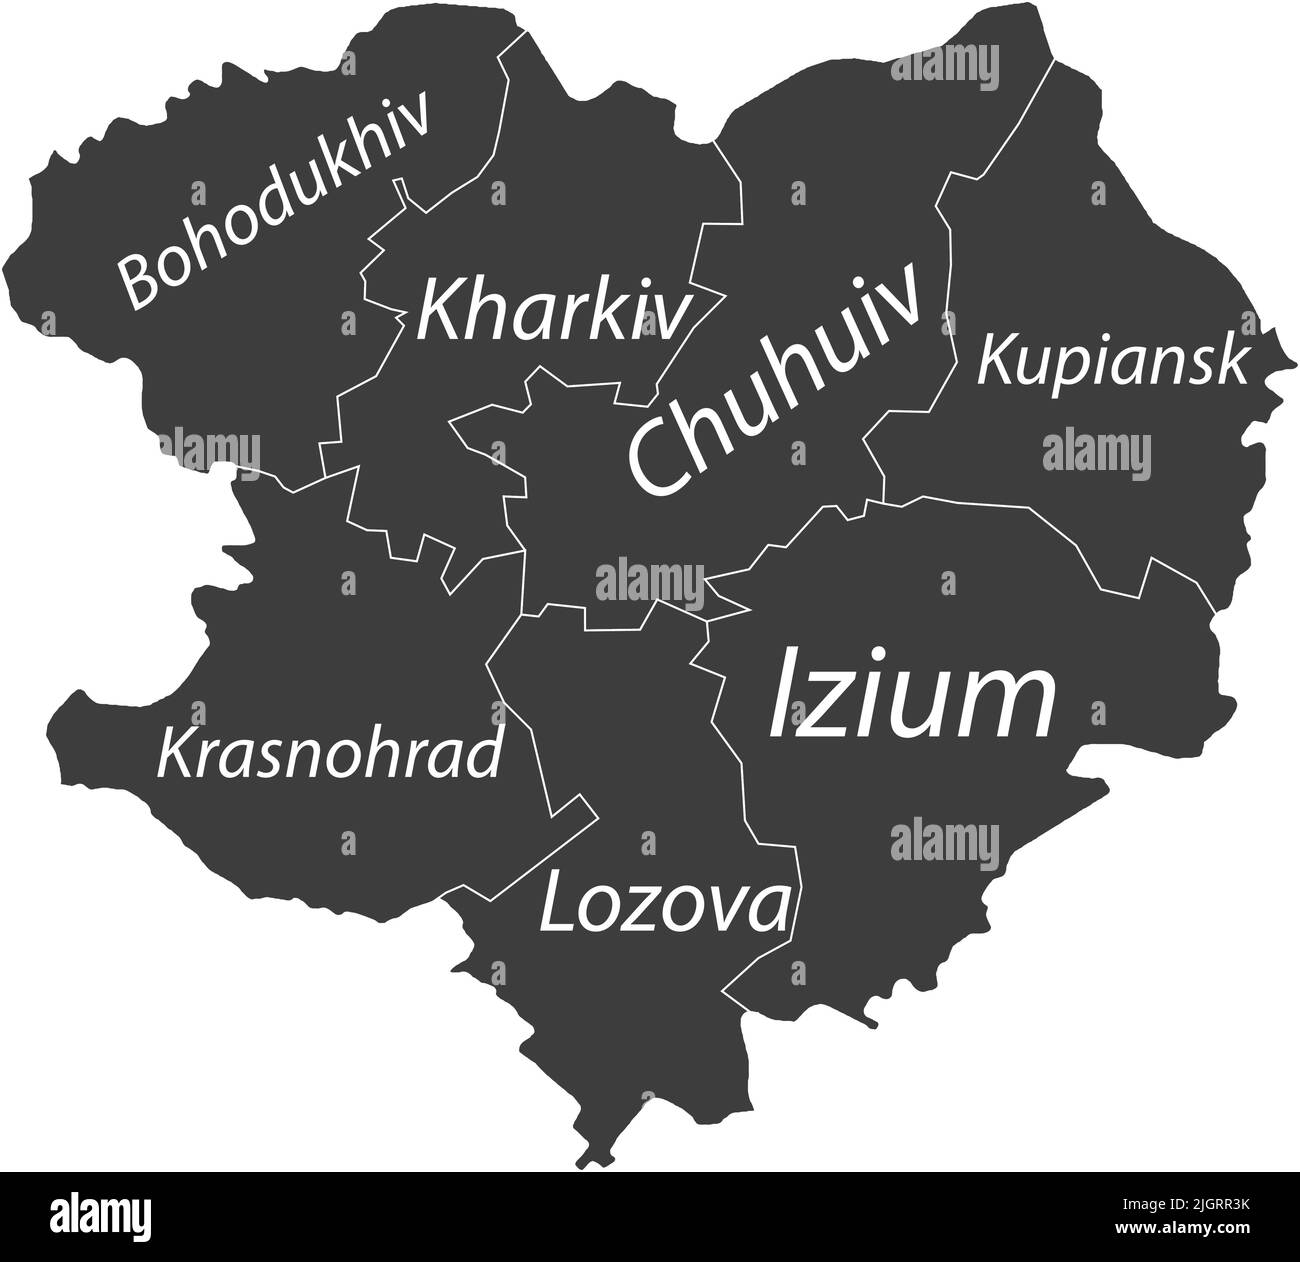 Dunkelgrau getaggte Karte von Raionen im GEBIET CHARKIW, UKRAINE Stock Vektor